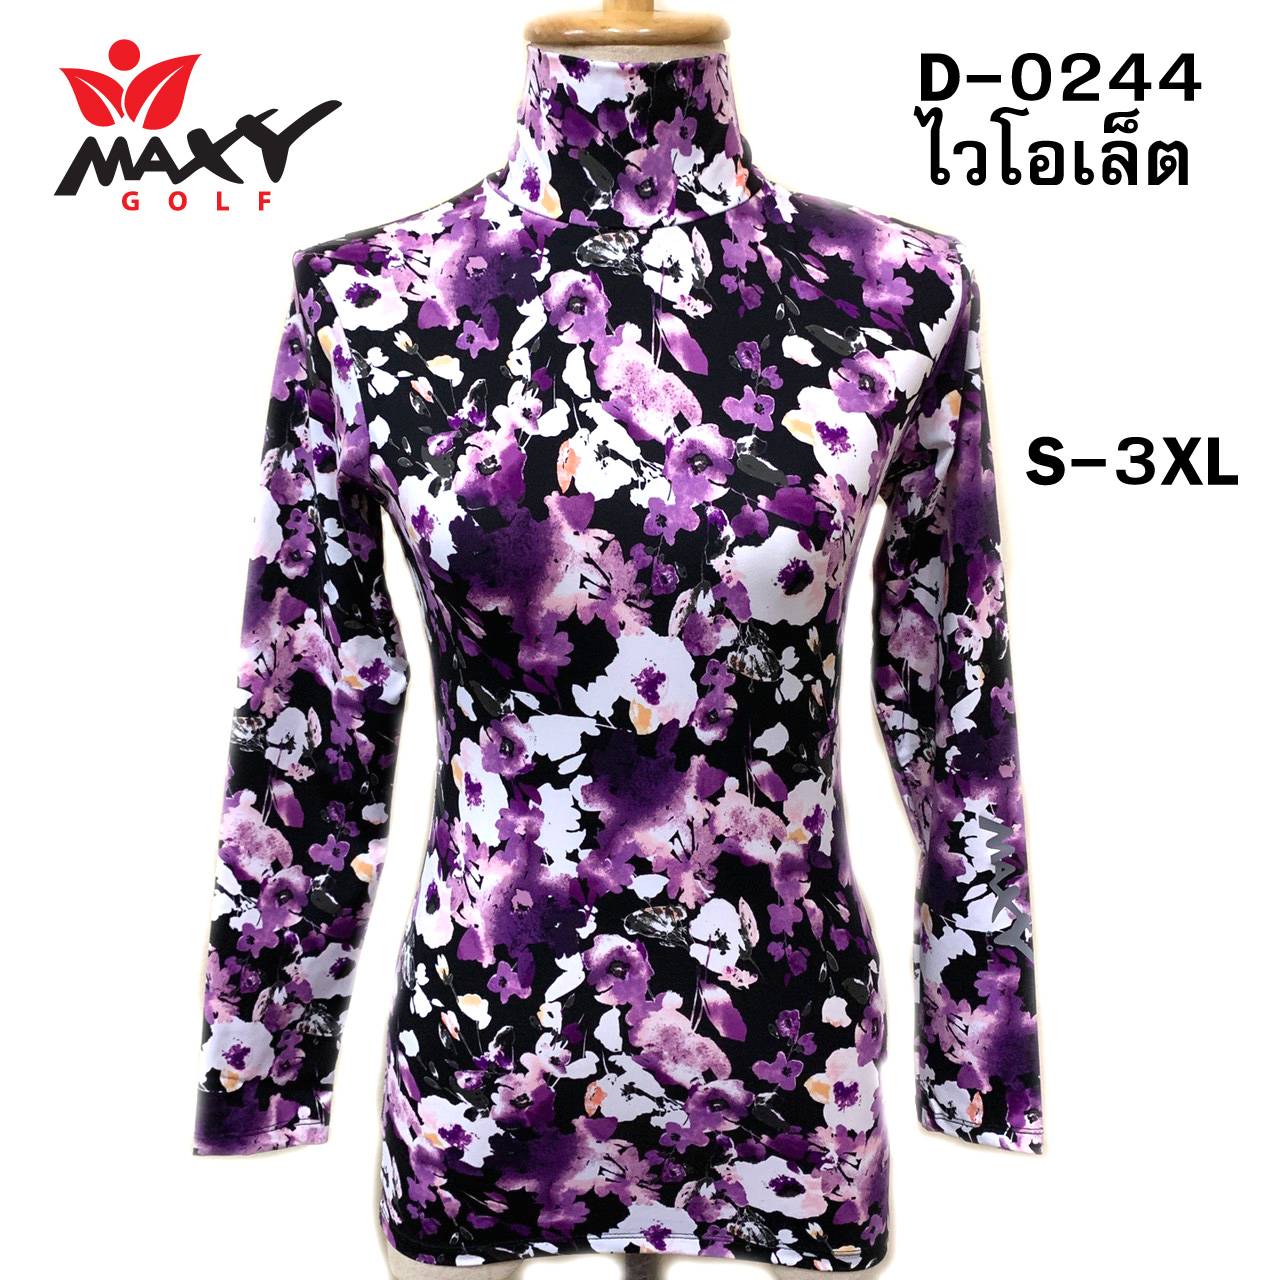 เสื้อบอดี้ฟิตกันแดด(คอเต่า)สำหรับผู้หญิง ยี่ห้อ MAXY GOLF (รหัส D-0244 ไวโอเล็ต)